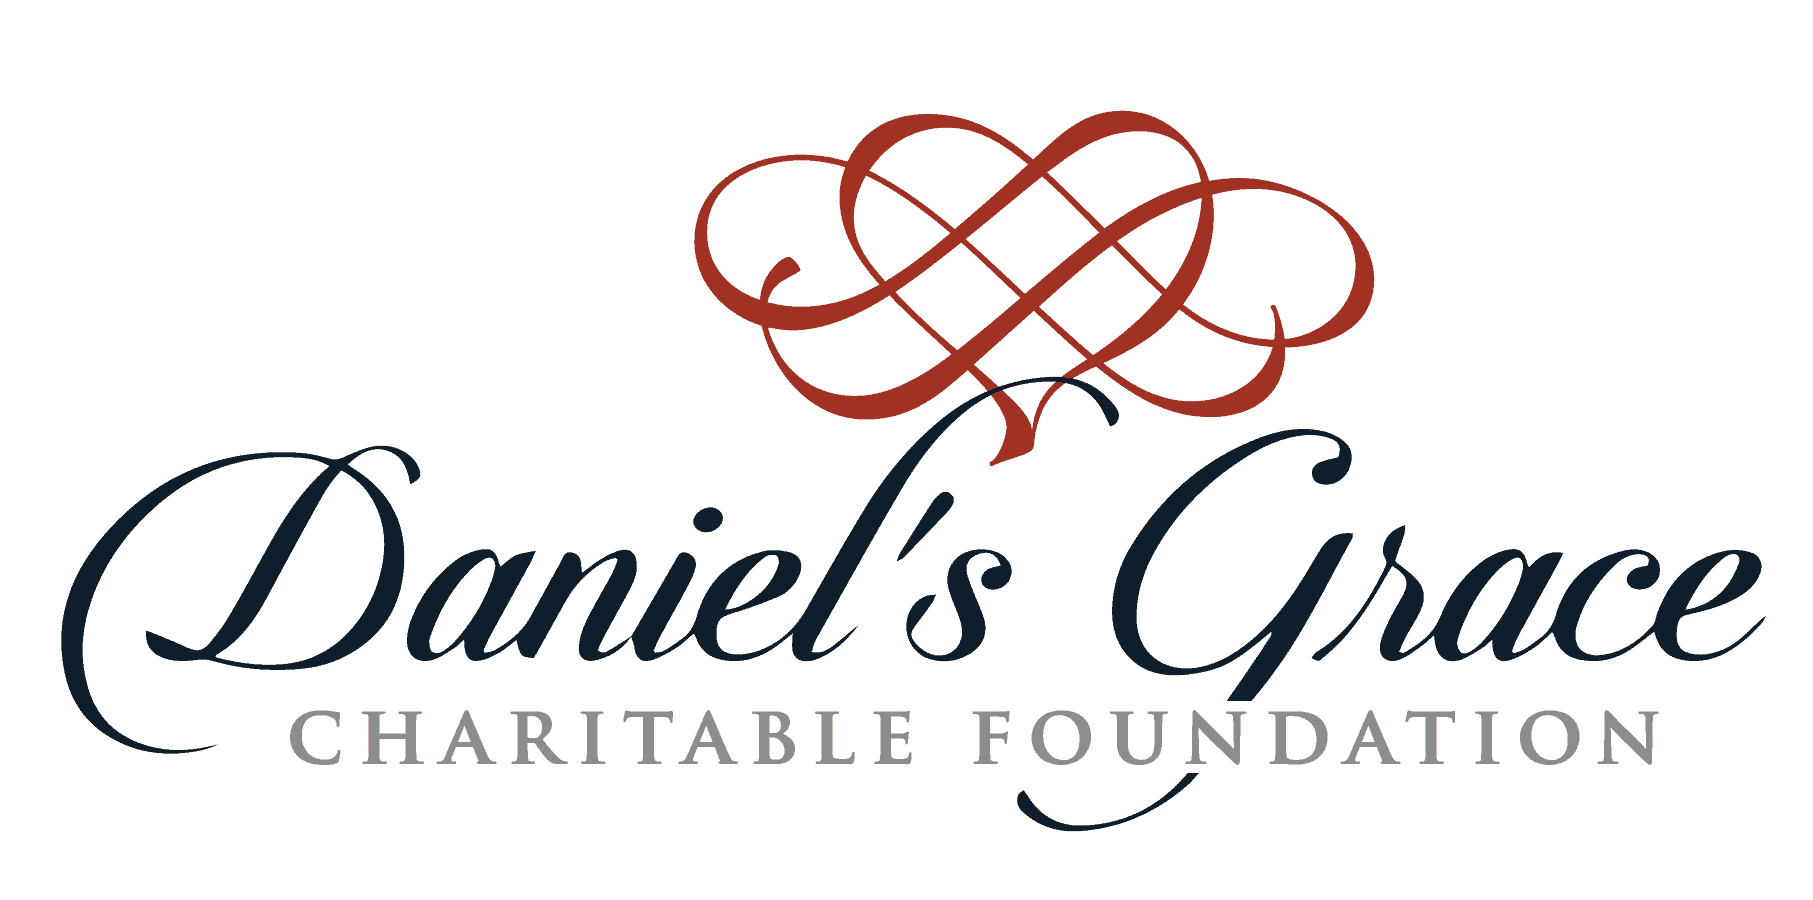 Daniel's Grace Charitable Foundation